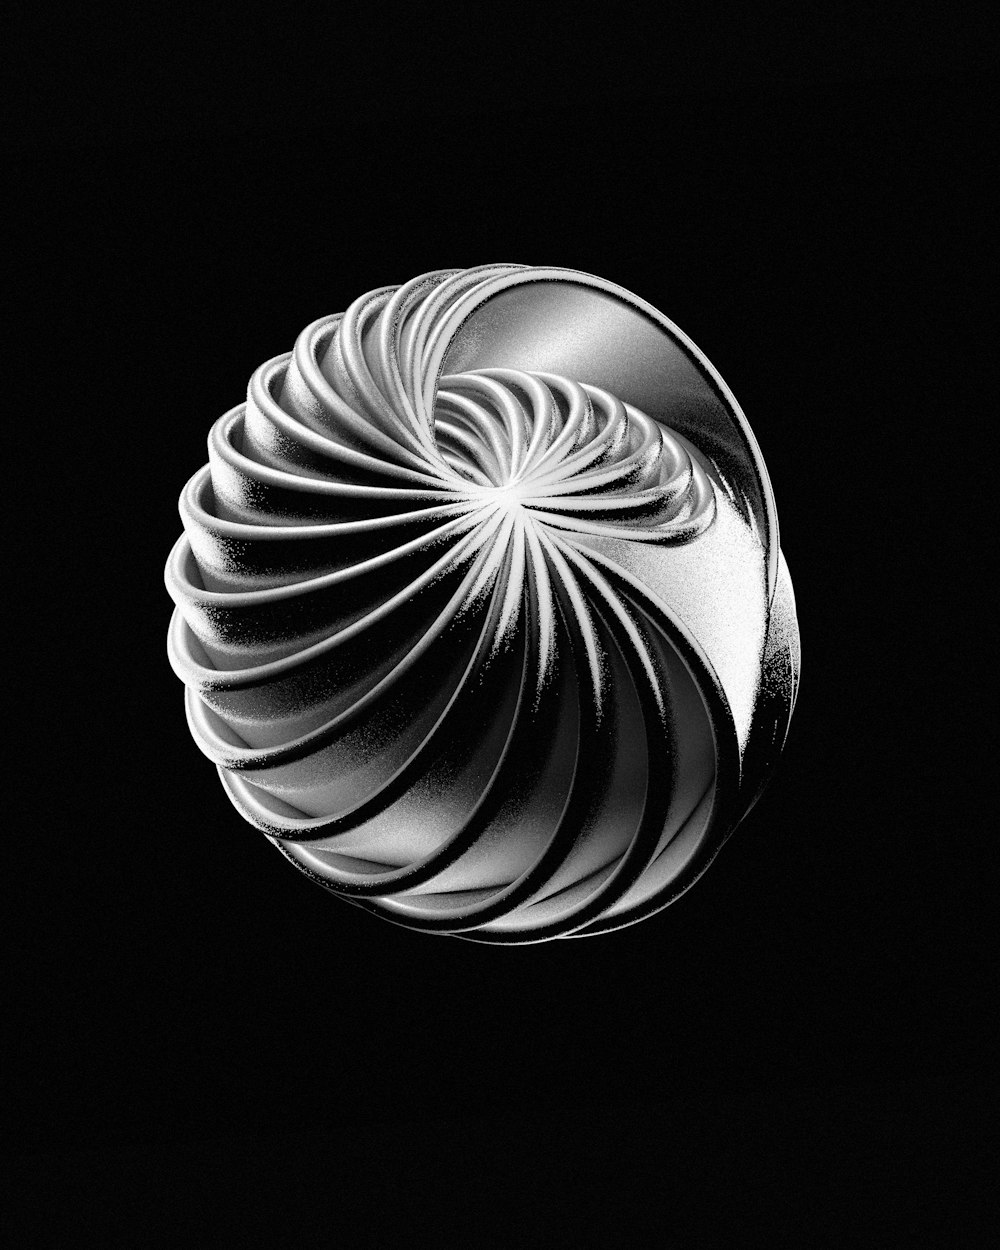 Una imagen en blanco y negro de una esfera con un fondo negro